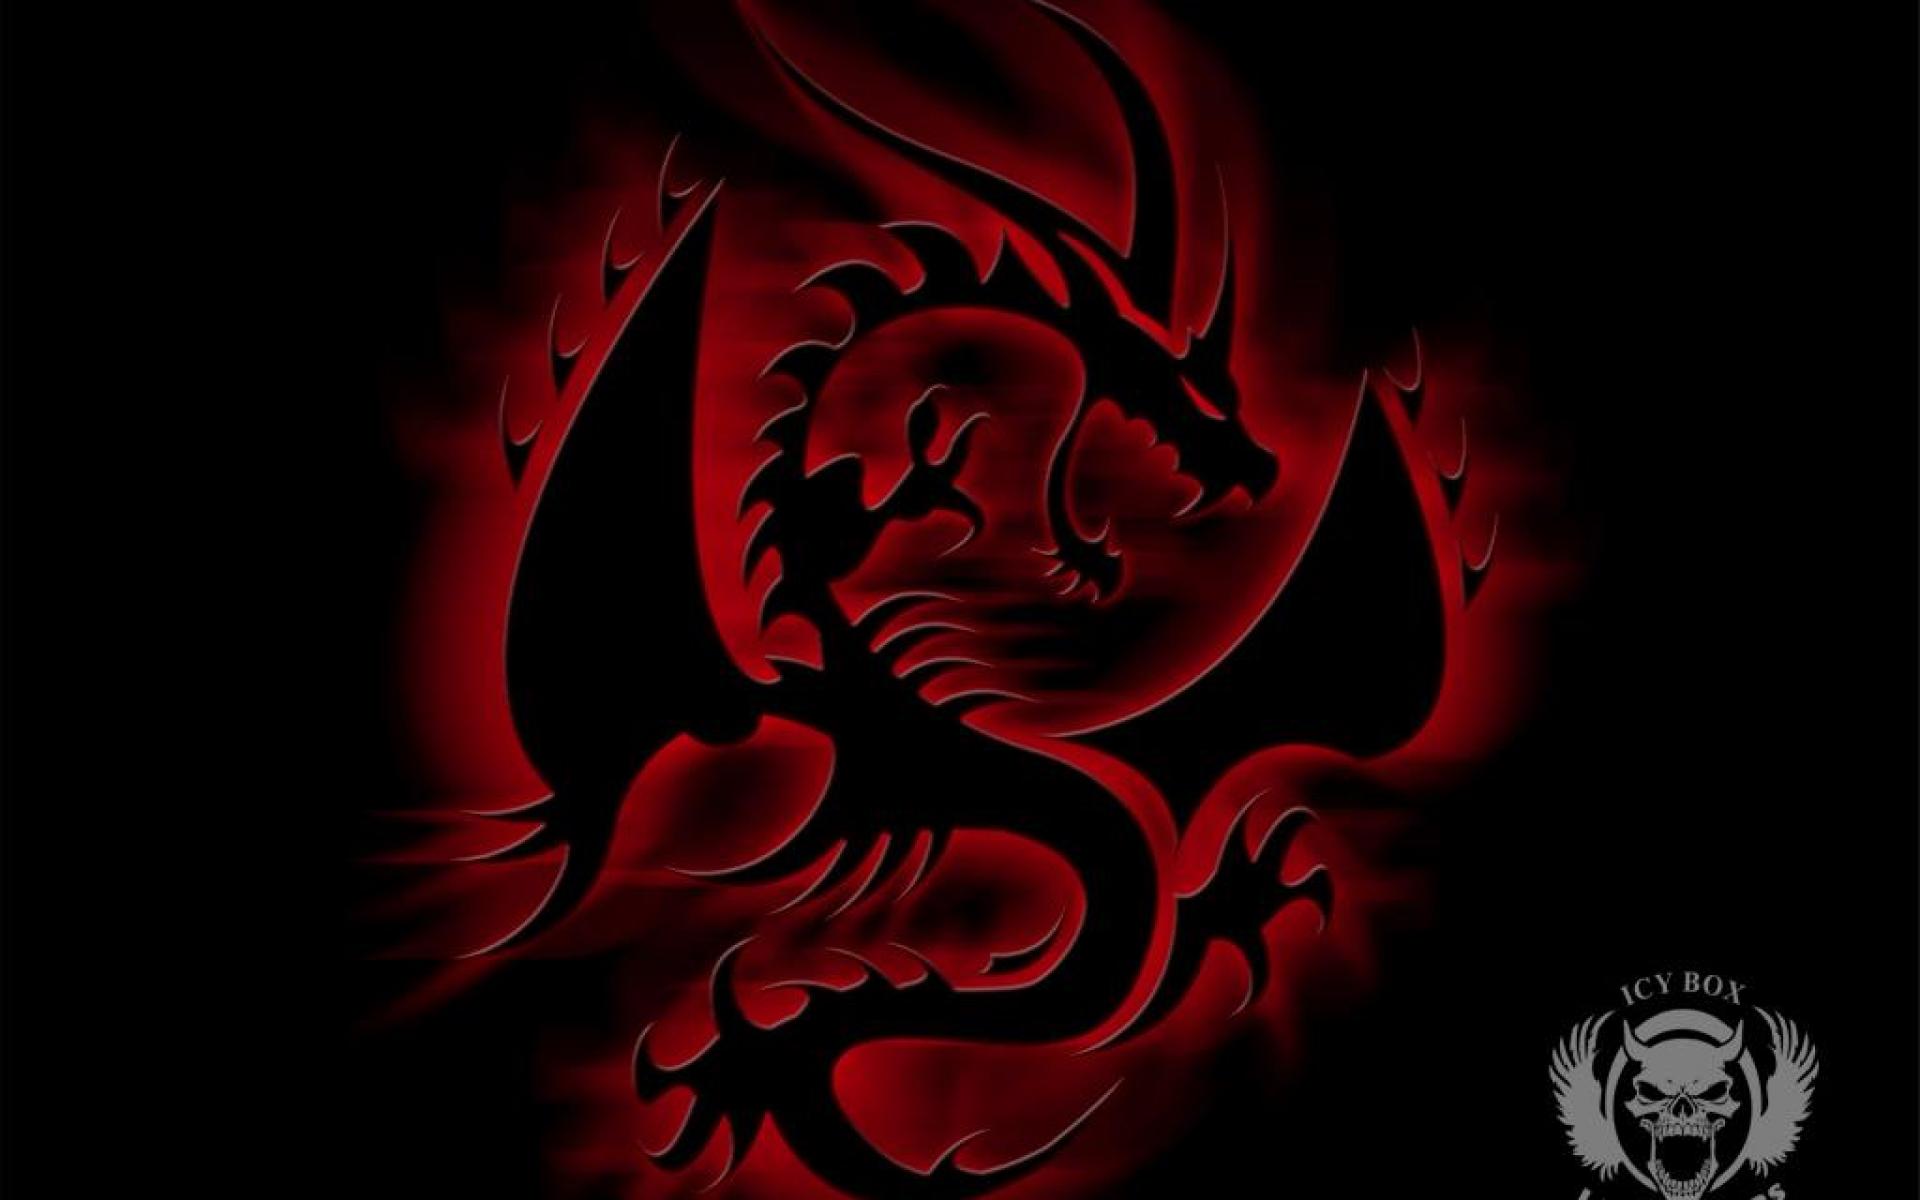 fond d'écran noir et rouge,rouge,conception graphique,ténèbres,dragon,personnage fictif